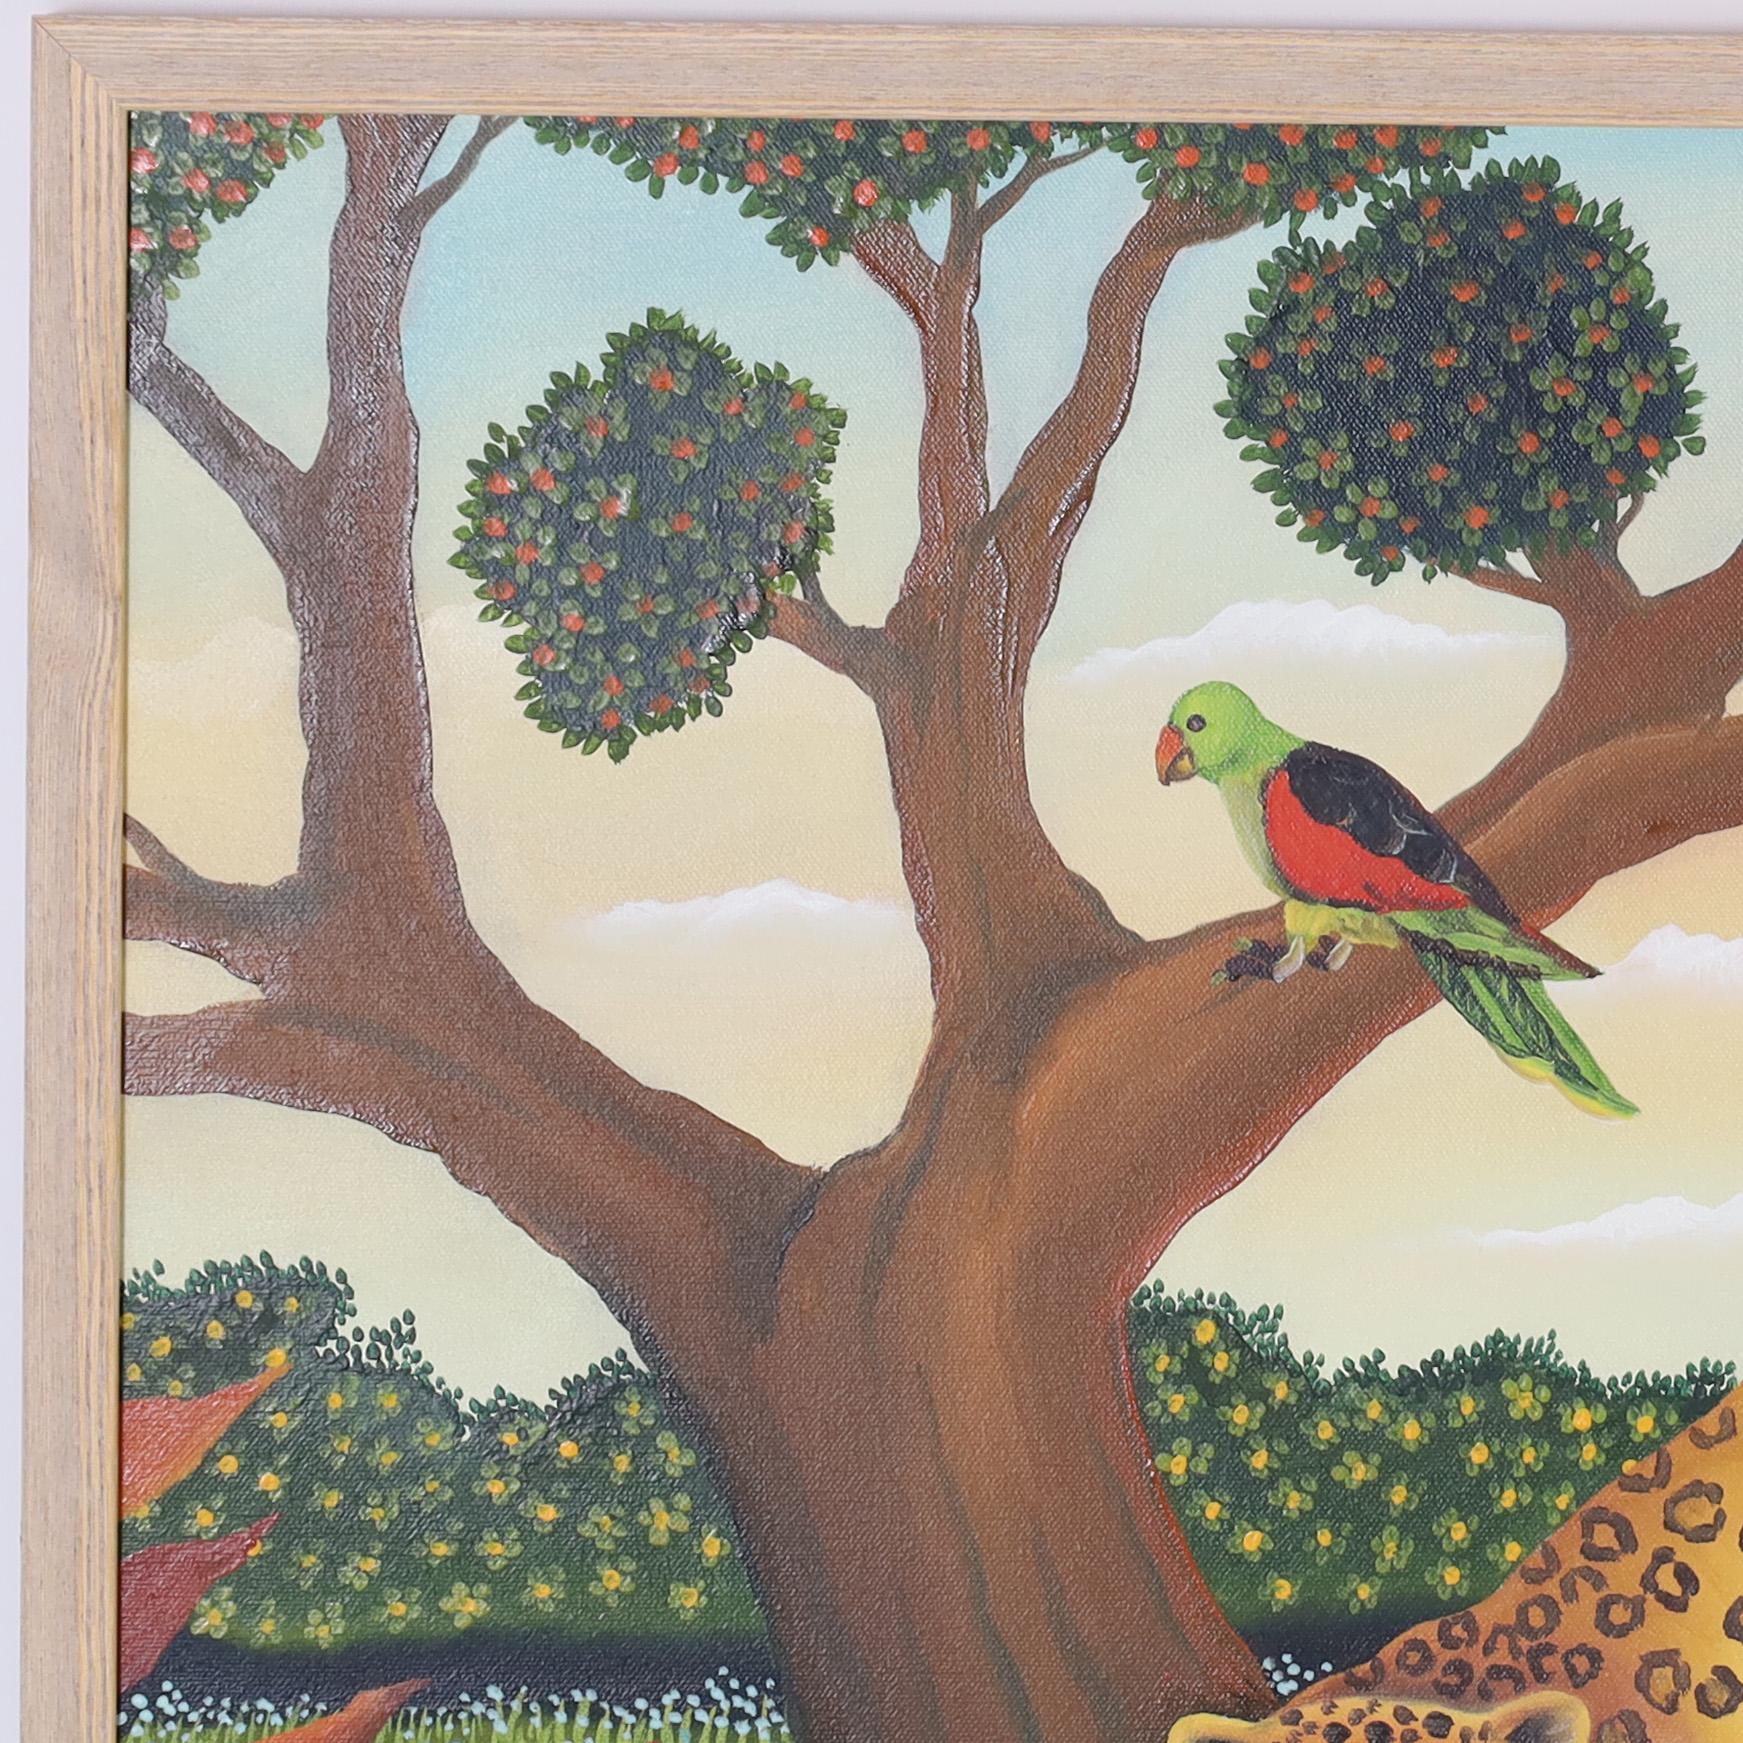 Charmante peinture acrylique sur toile du milieu du siècle représentant un léopard avec faune et flore, exécutée dans un style naïf enchanteur. Signé Paradis 82 et présenté dans un cadre en bois. 